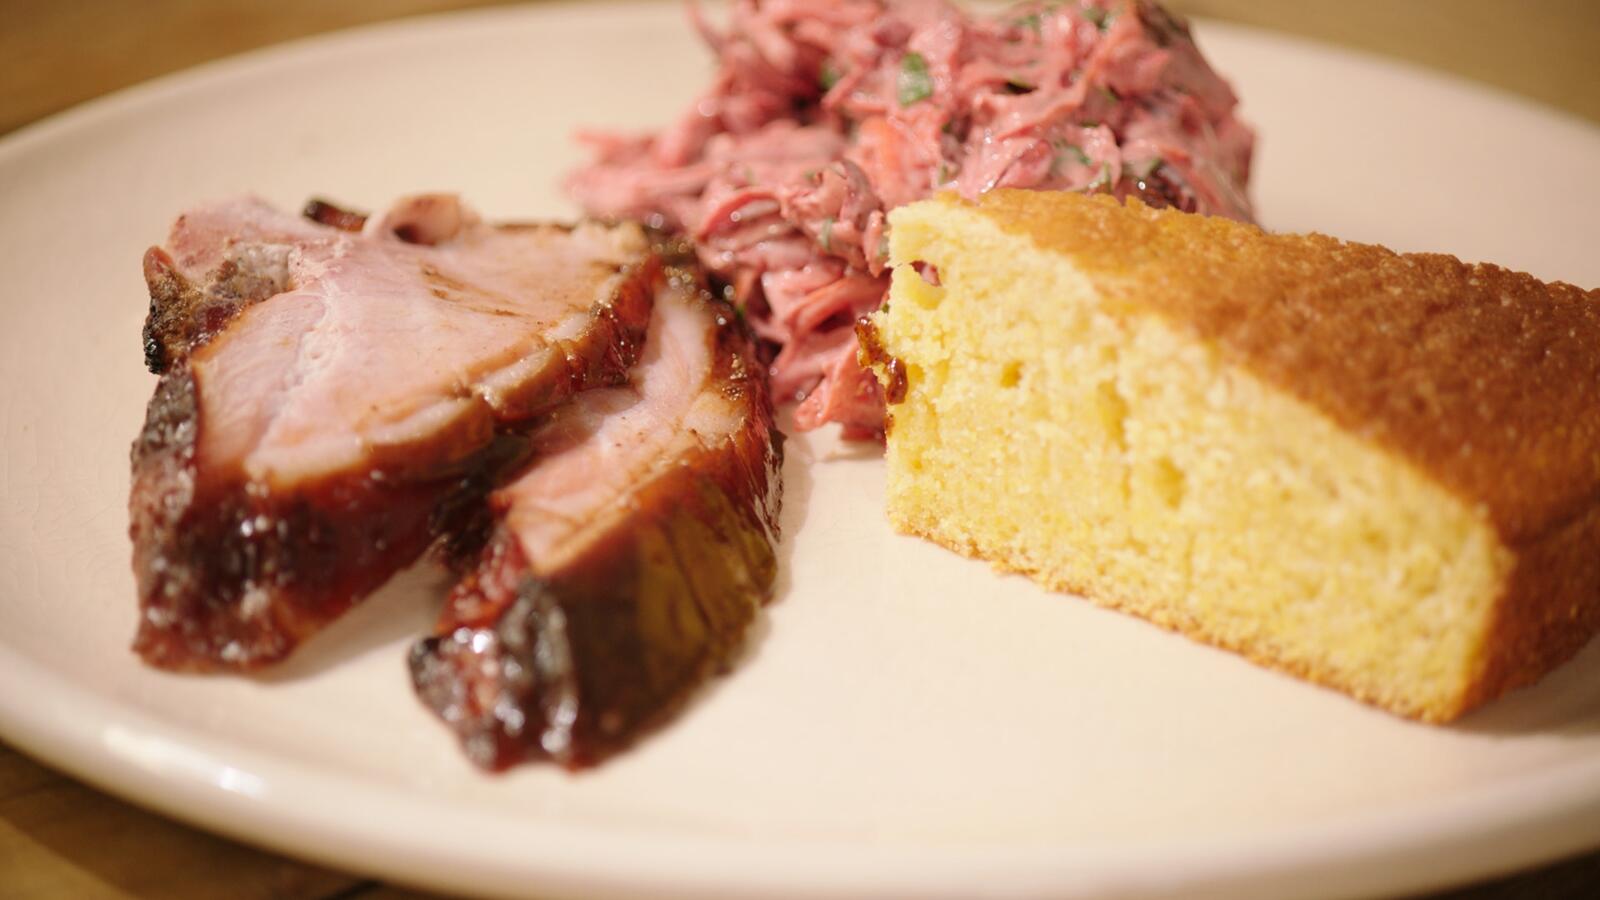 BBQ glazed ham met maïsbrood en coleslaw van rode biet